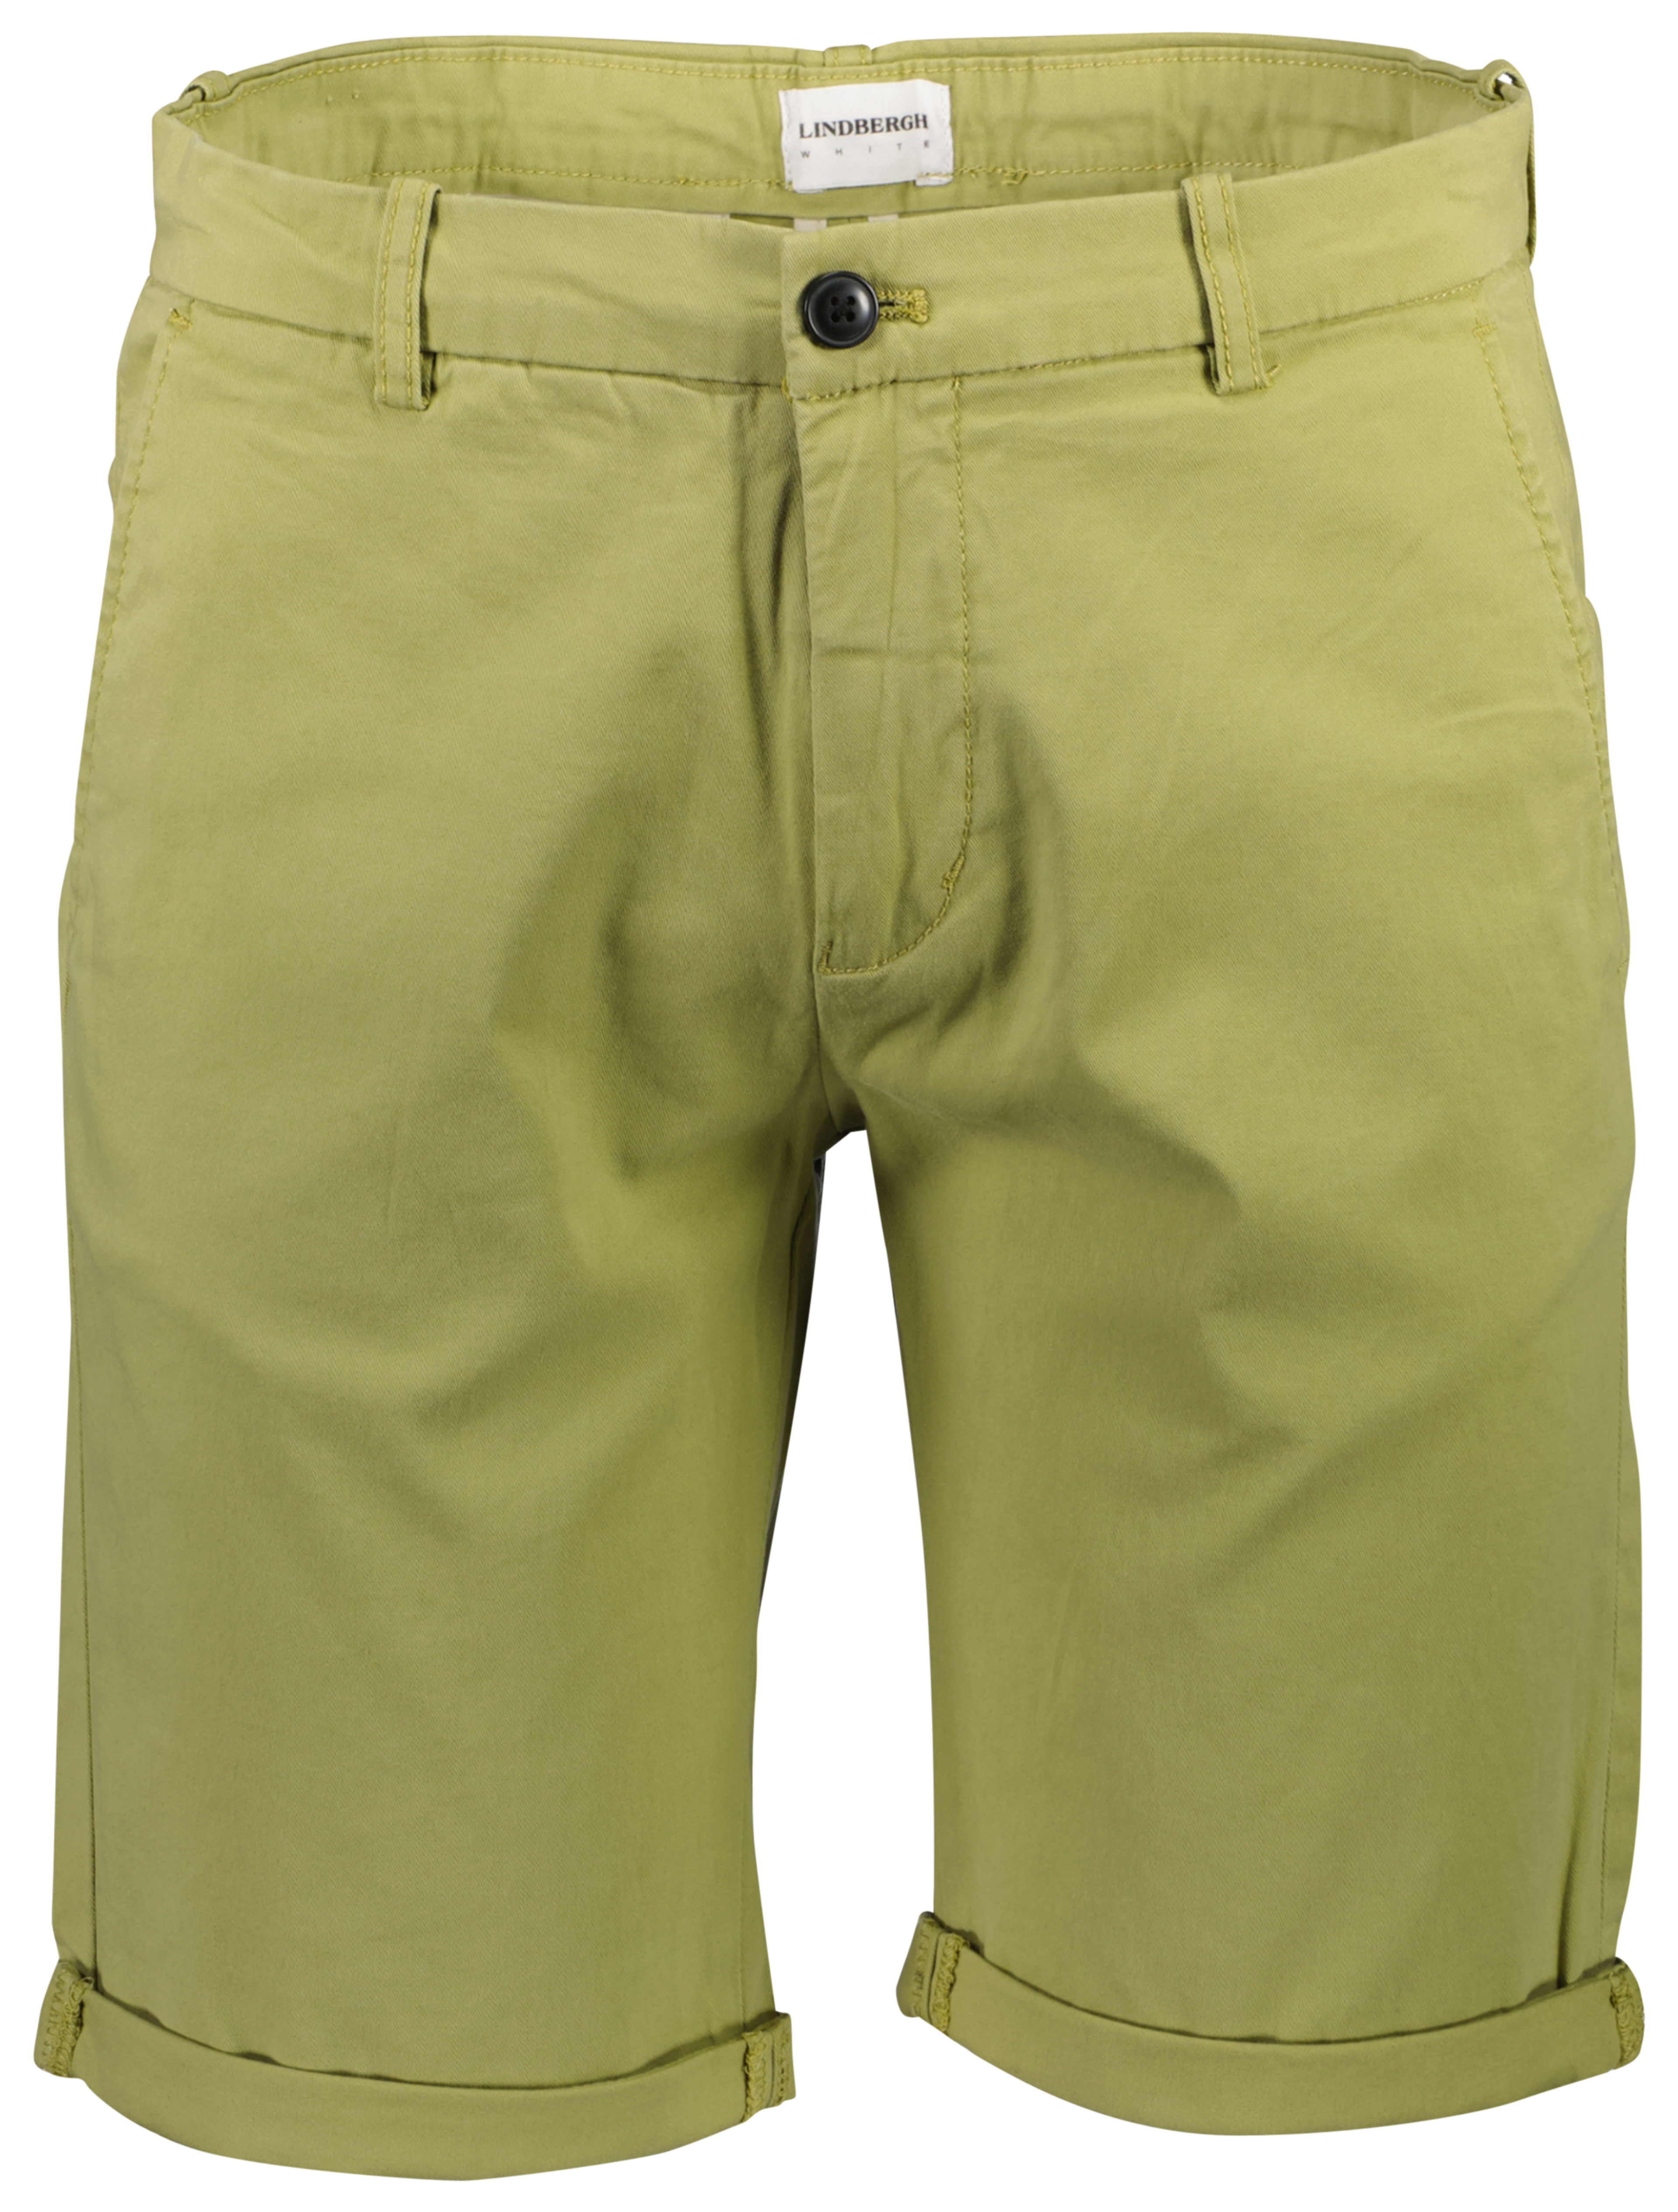 Lindbergh Chino-Shorts grün / khaki